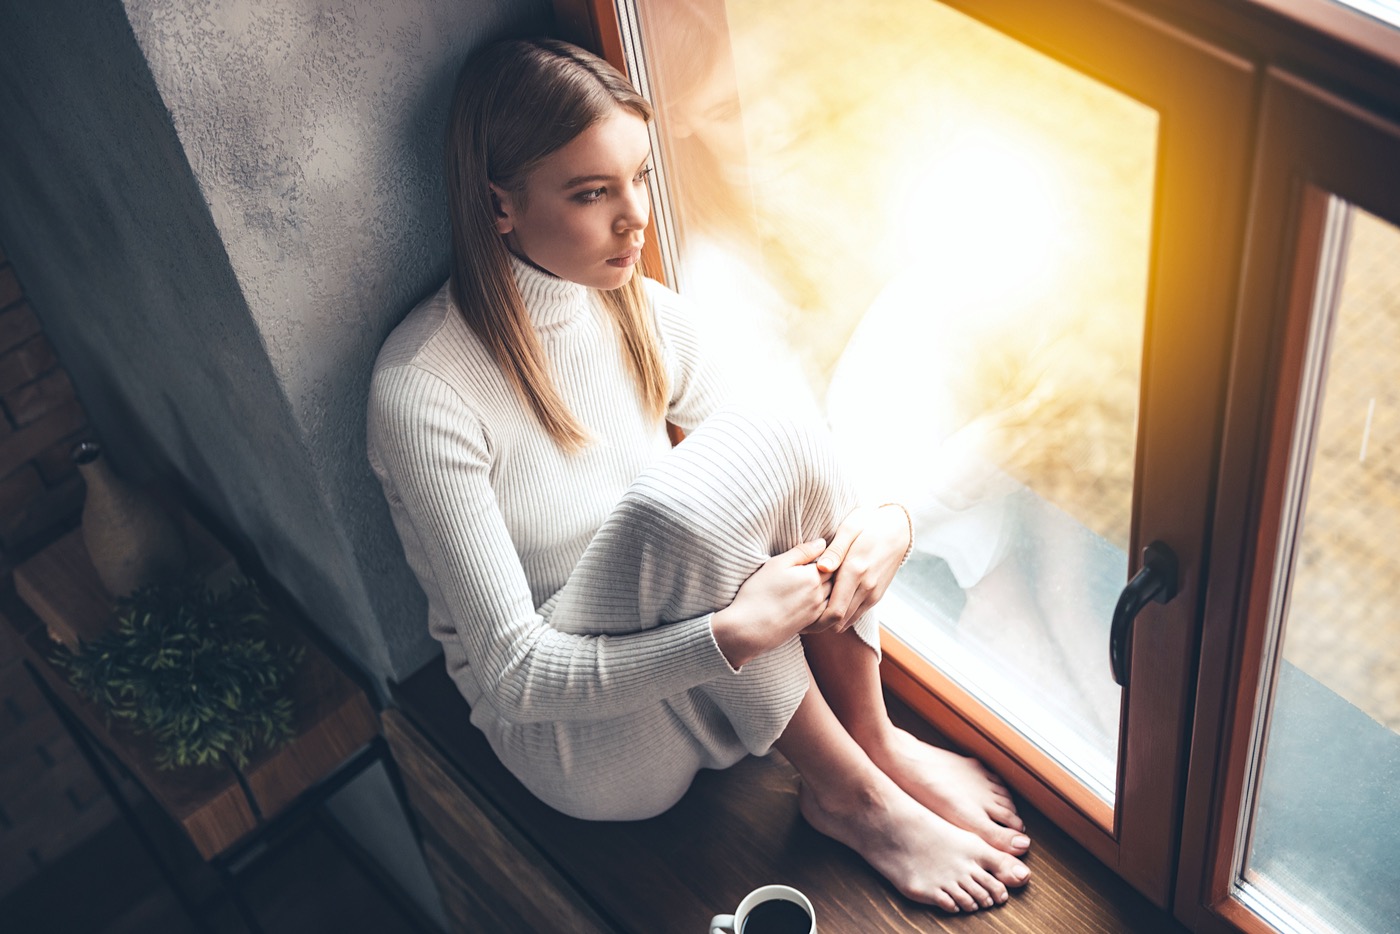 Mujer joven mirando por la ventana mientras bebe una taza de café.